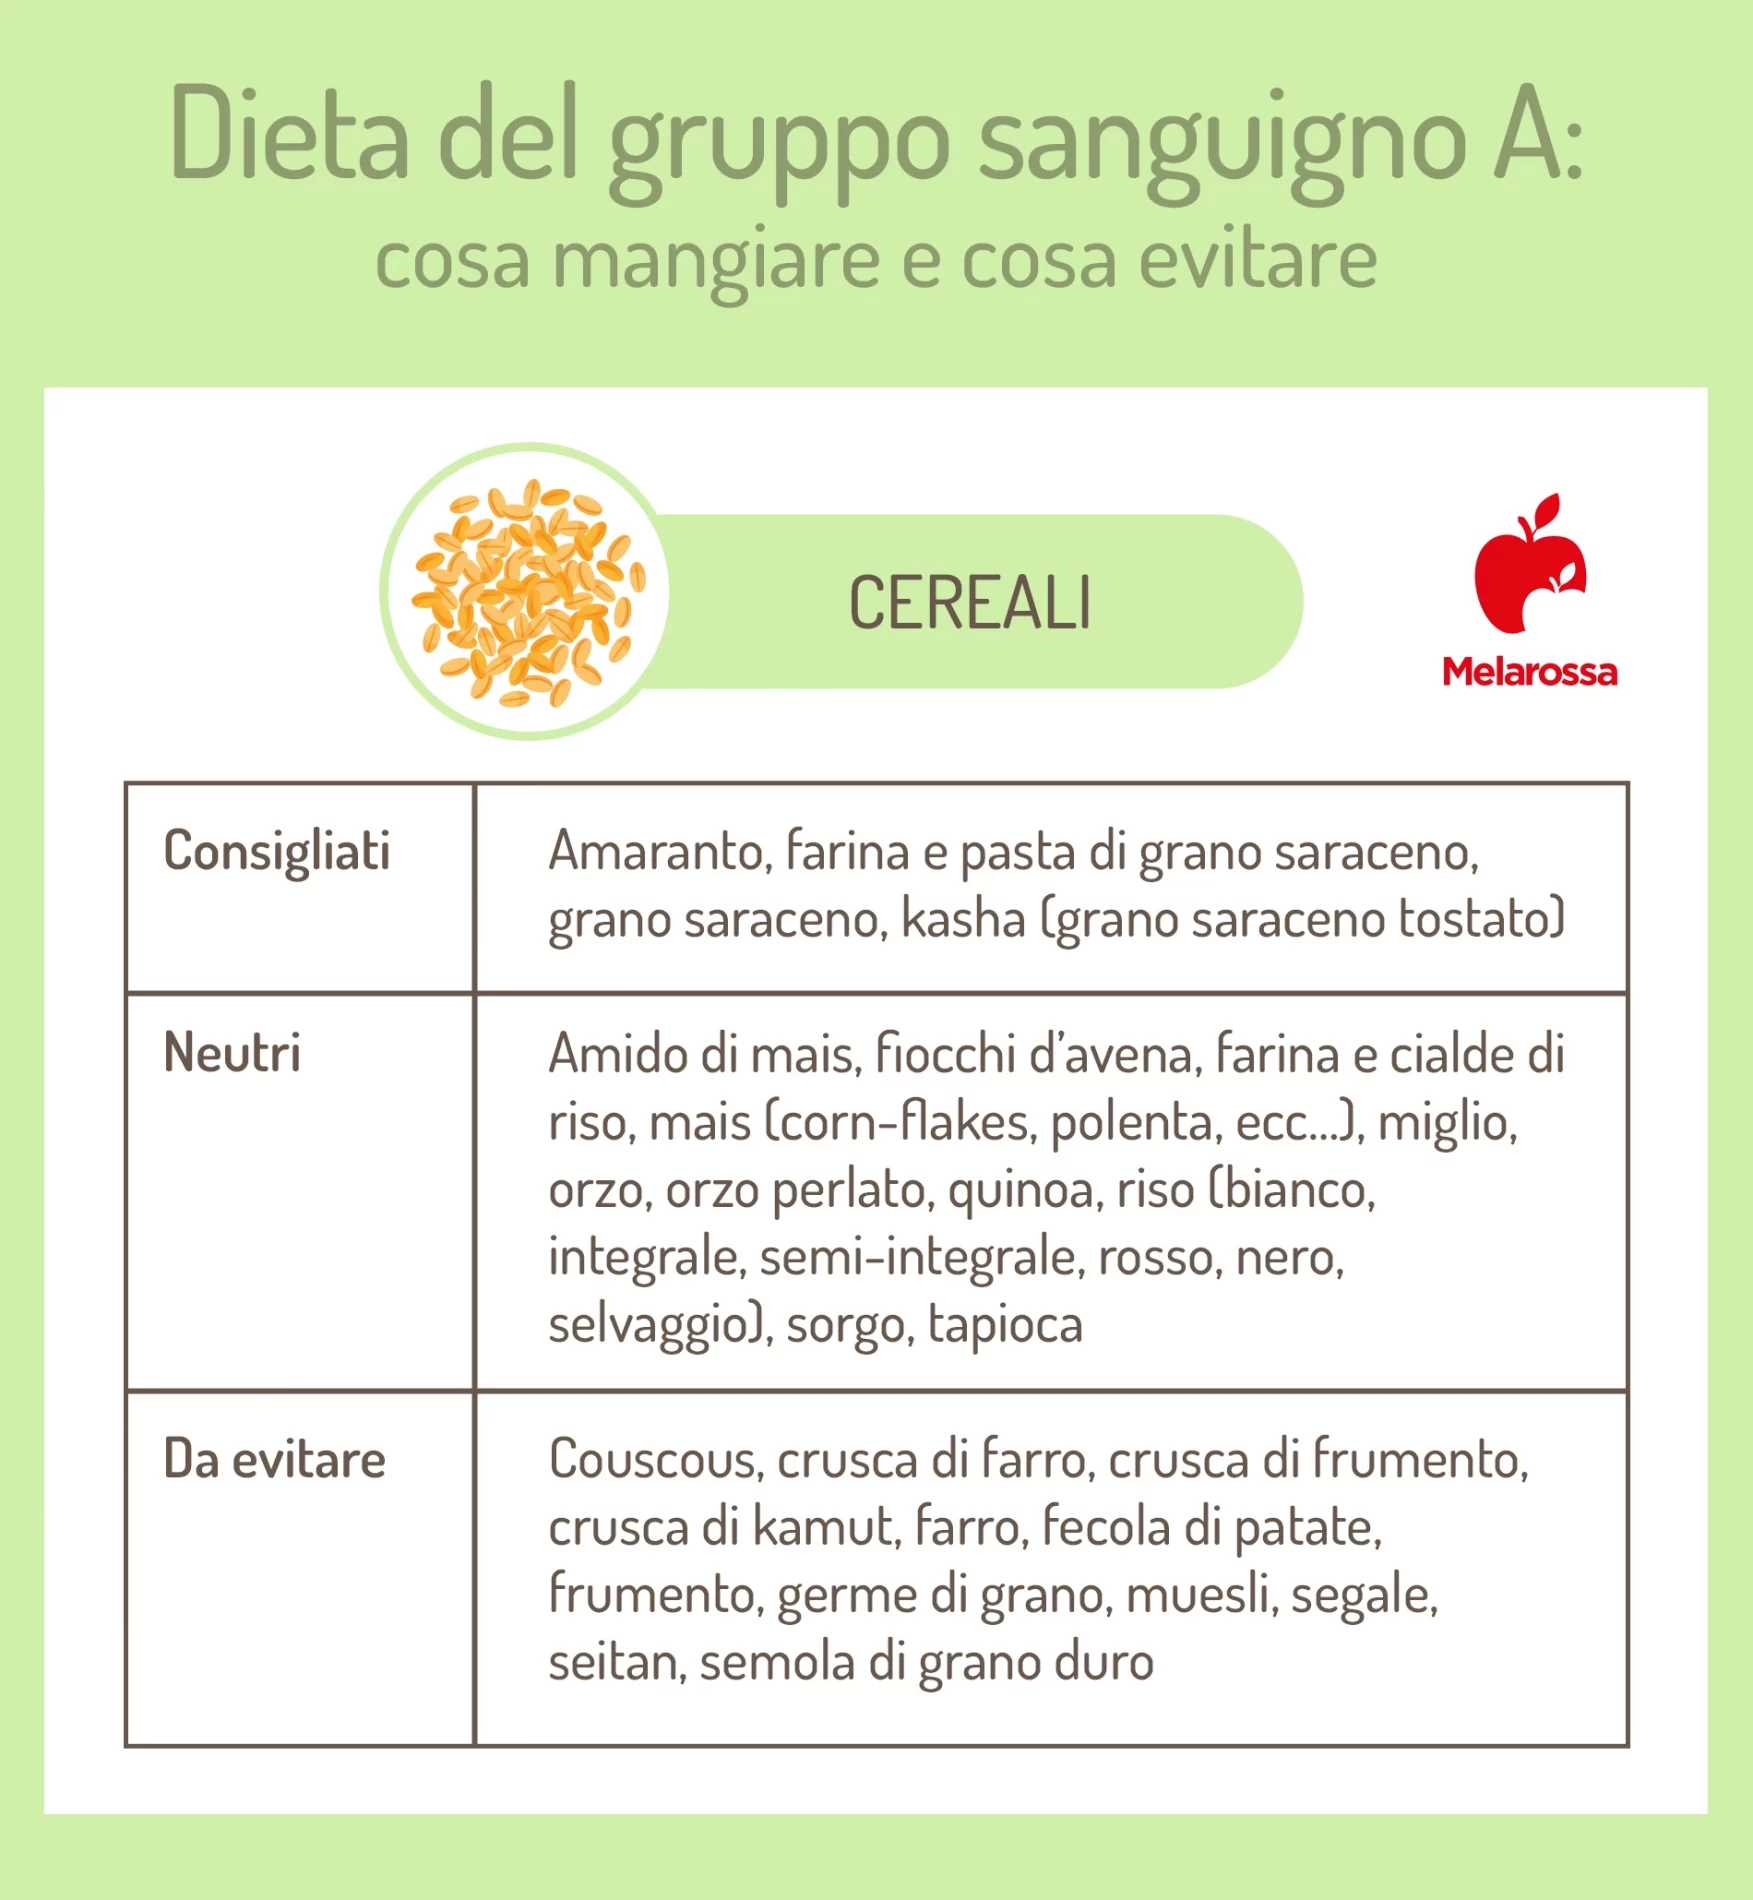 dieta gruppo sanguigno A: cereali